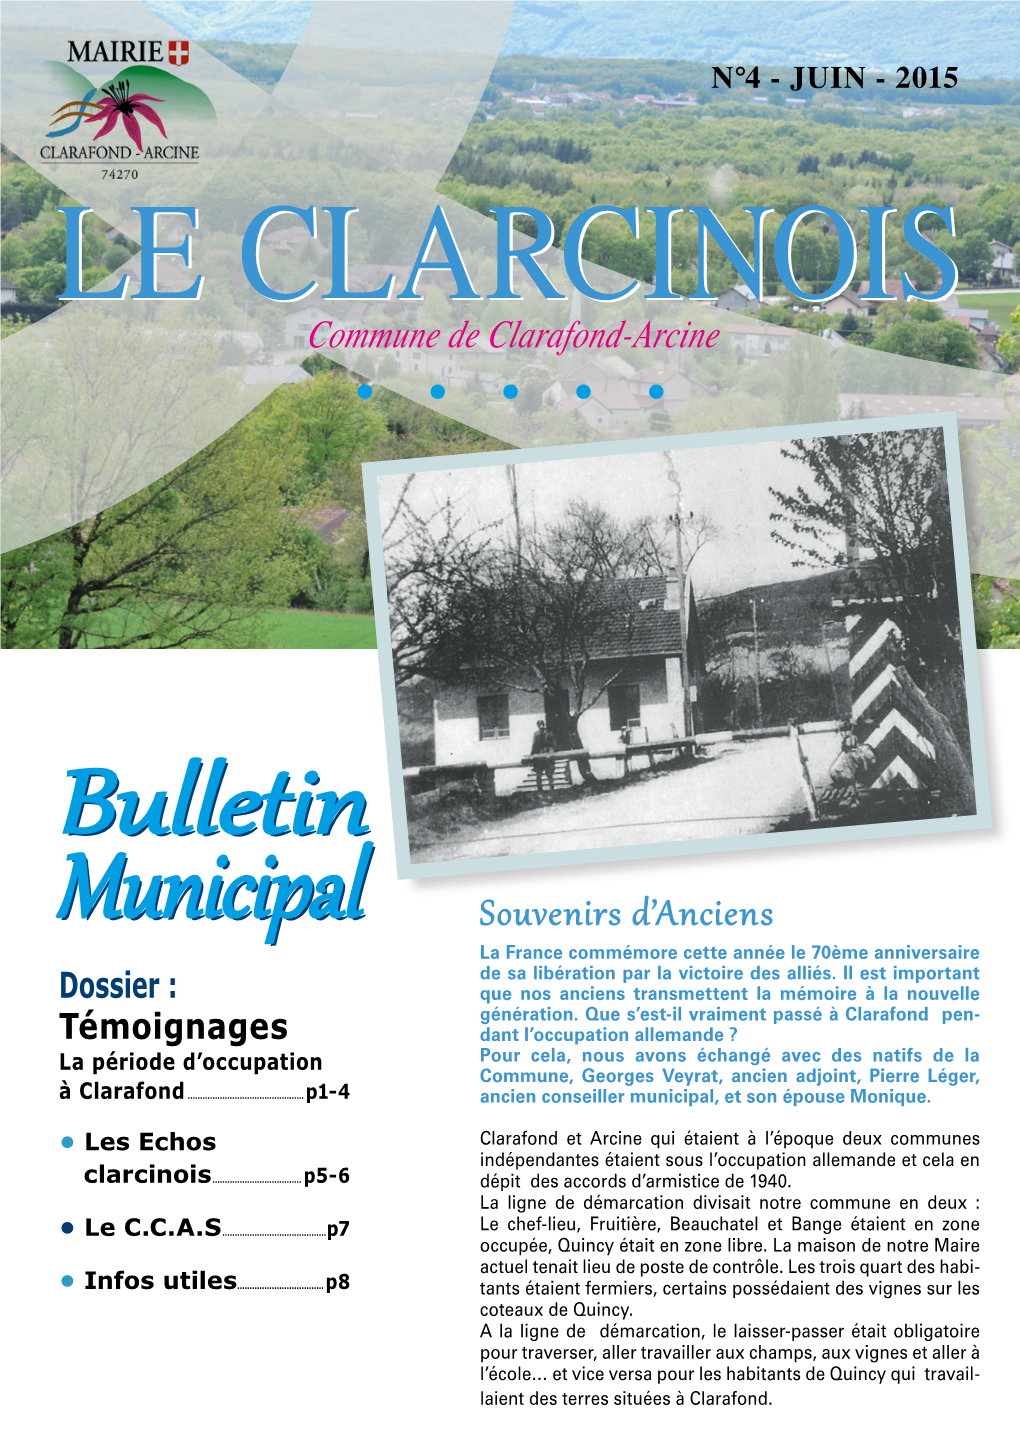 Bulletin Municipal Bulletin Municipal